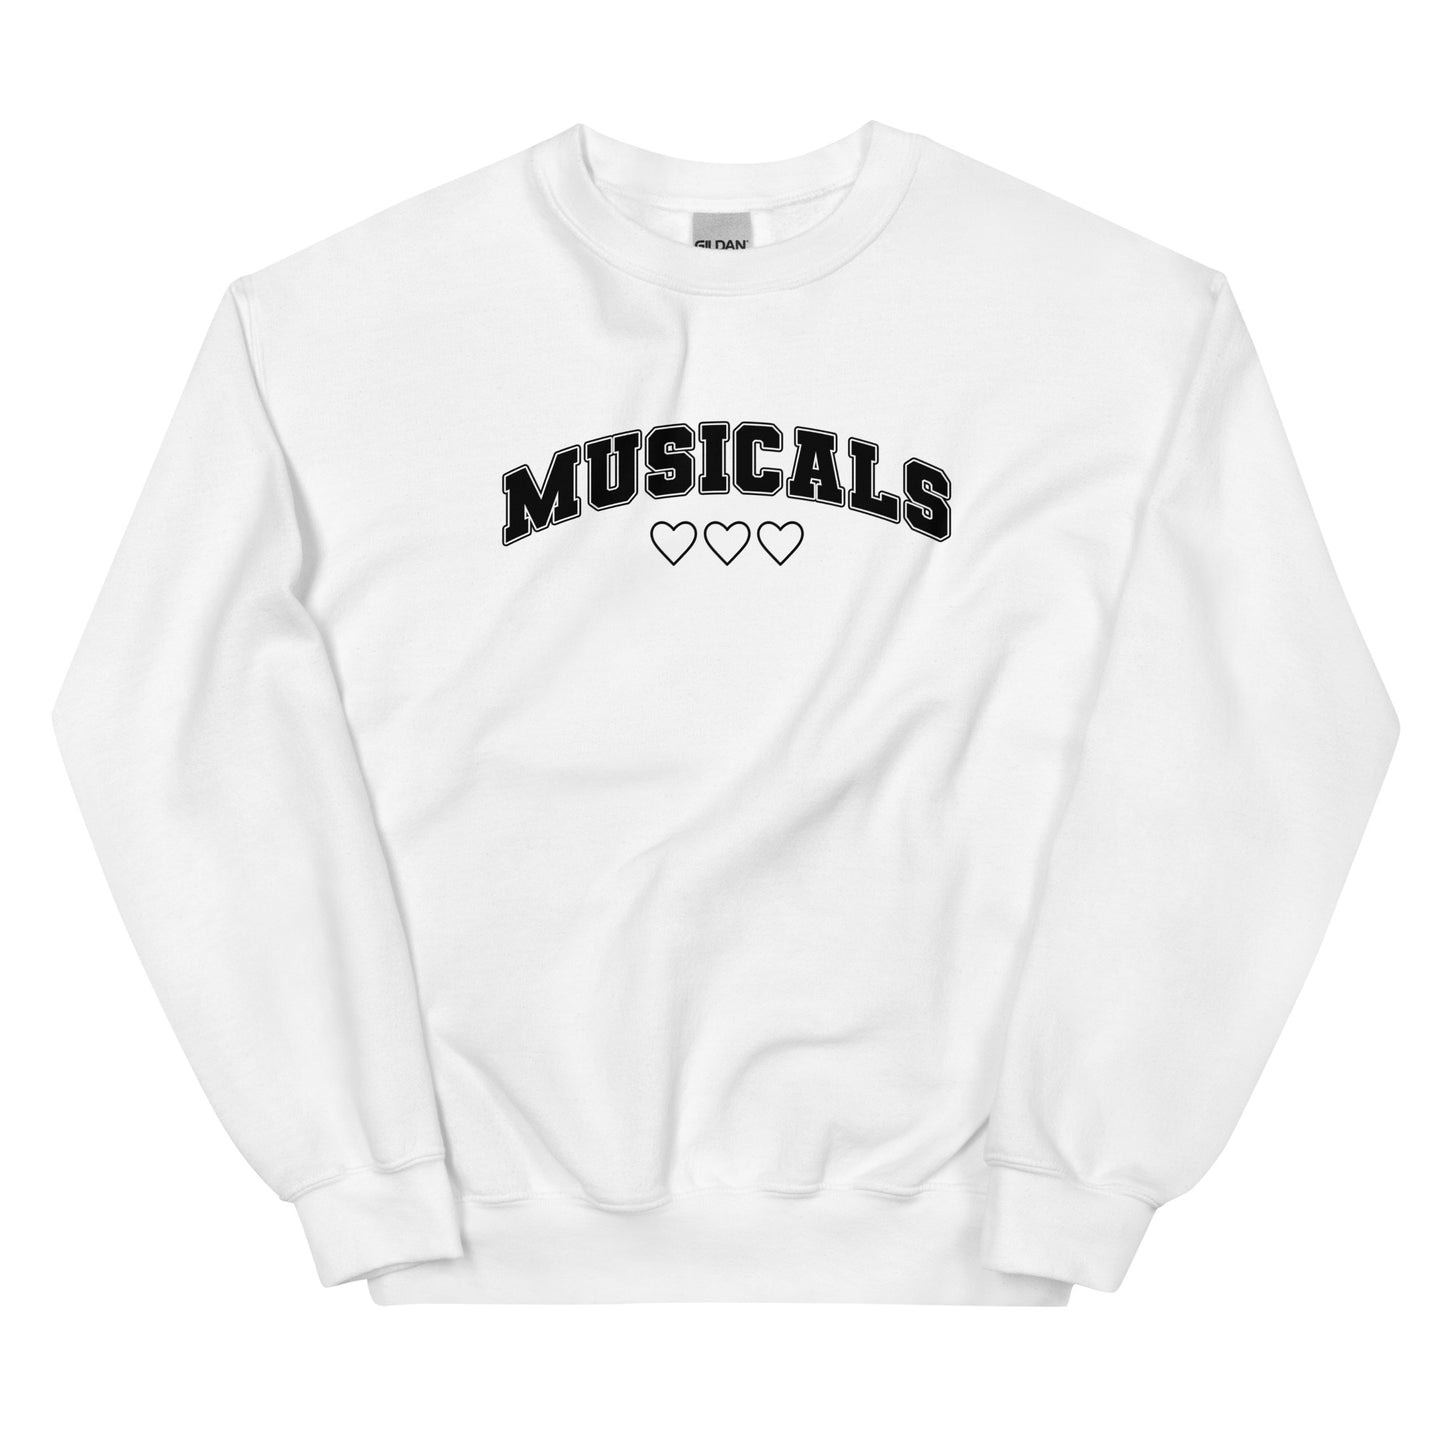 Musicals Collegiate Love Sweatshirt (Black Graphic)